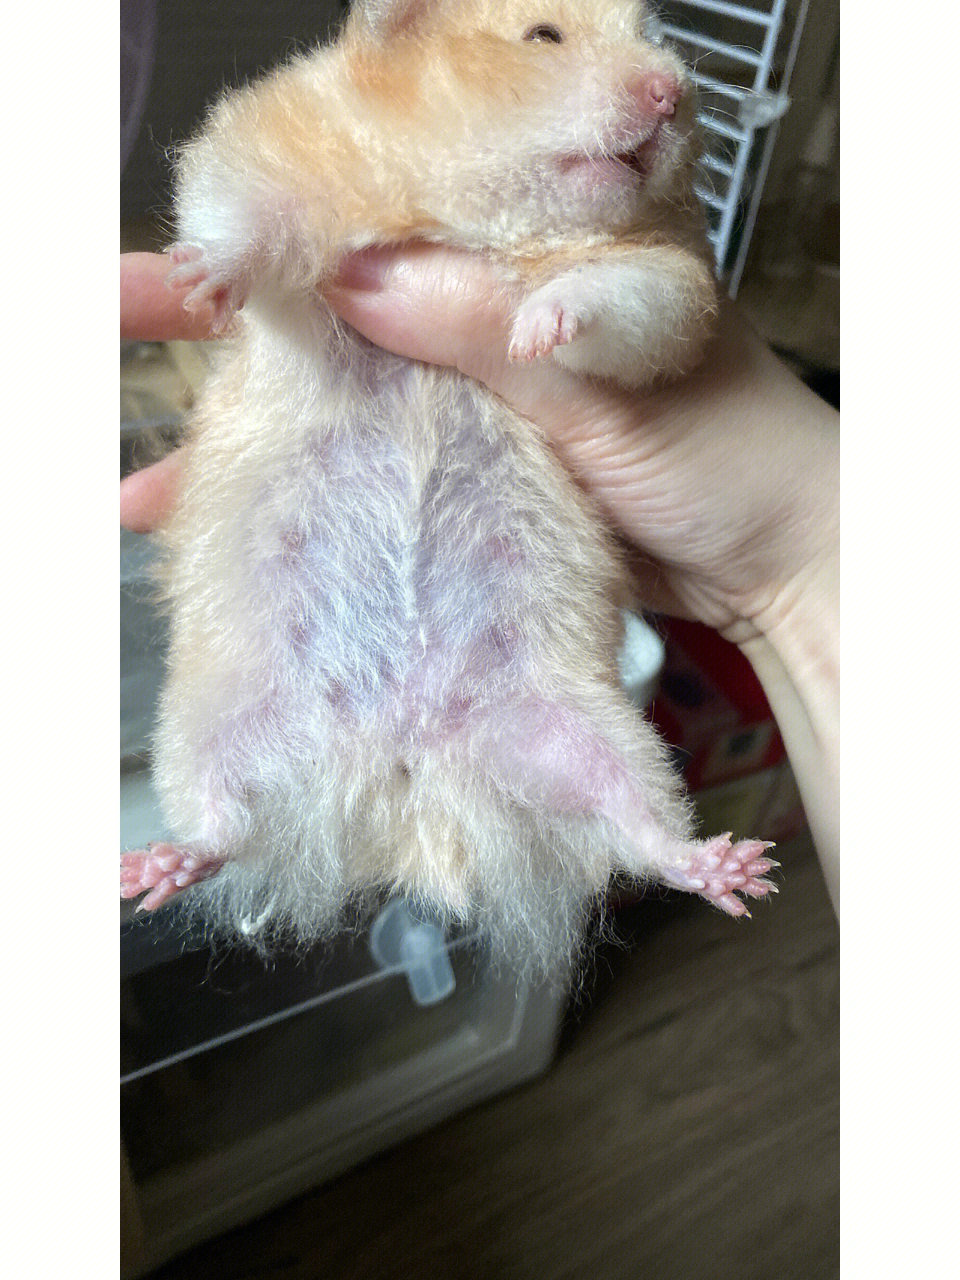 仓鼠刚怀孕的照片图片